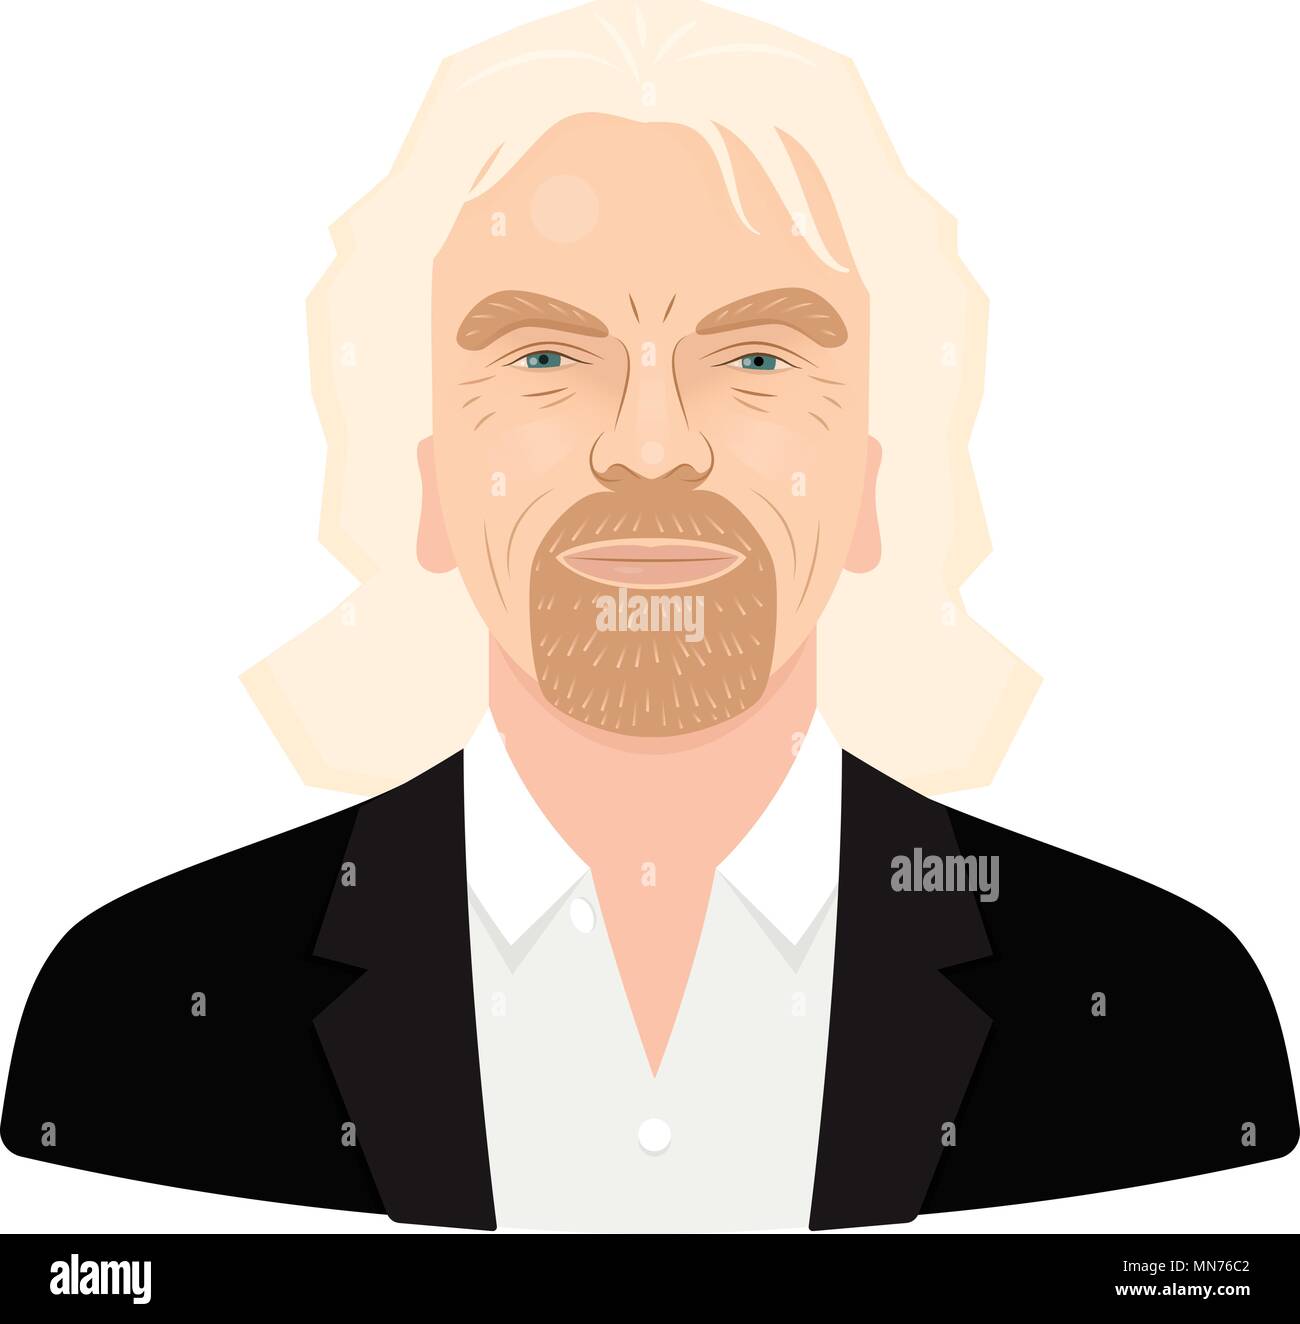 Mai, 2018. Sir Richard Branson, der berühmte Unternehmer und Gründer, reichste Geschäftsmann. Vektor flachbild Portrait auf einem weißen Hintergrund. Stock Vektor